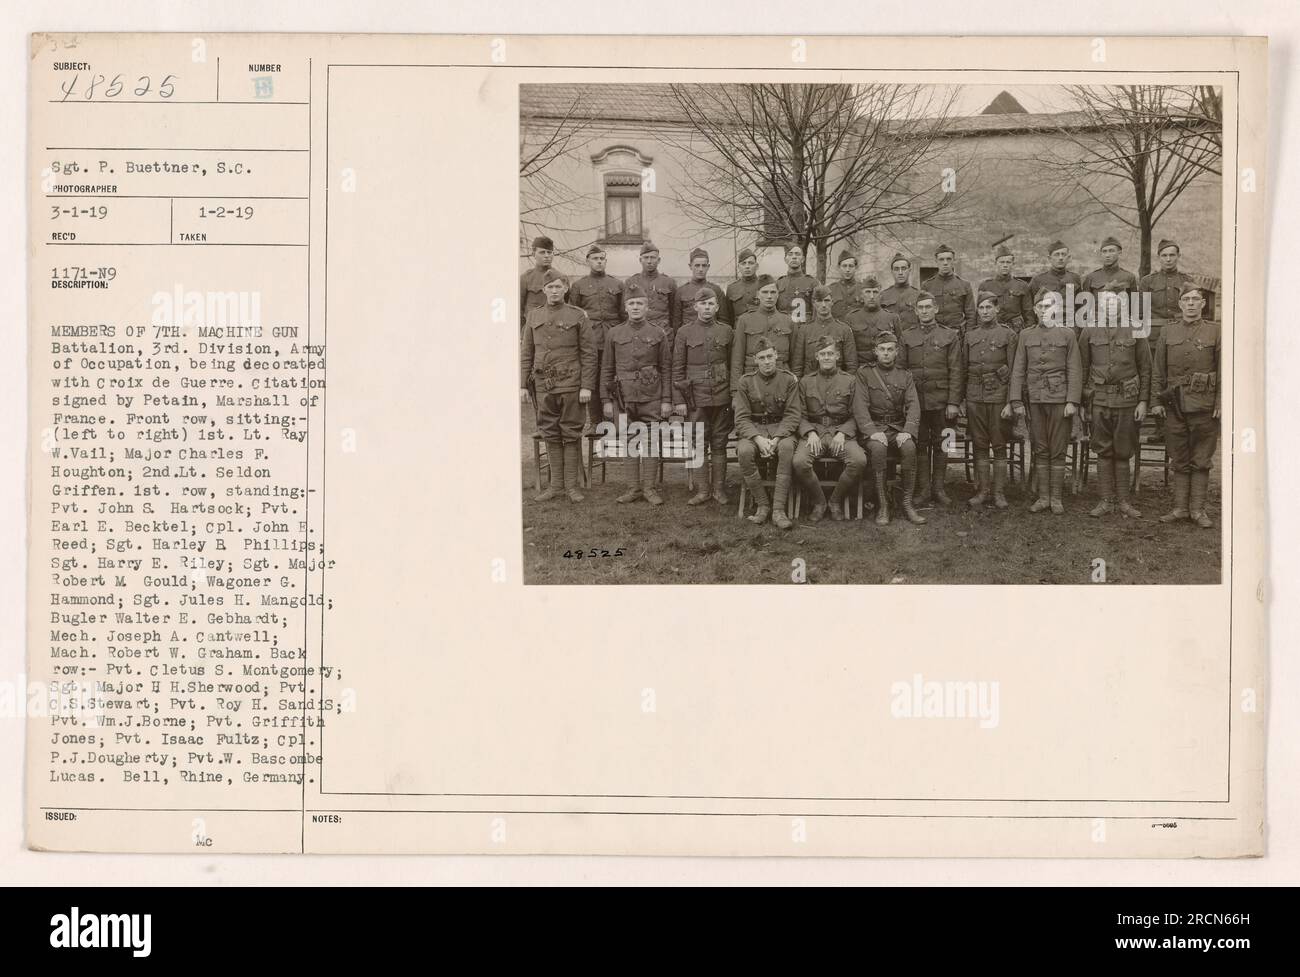 I membri del 7th Machine Gun Battalion, 3rd Division, Army of Occupation, sono decorati con la Croix de Guerre. La cerimonia si svolge a Bell, Reno, in Germania. La citazione è firmata da Petain, maresciallo di Francia. Questa foto è stata scattata il 1° gennaio 1919. Foto Stock